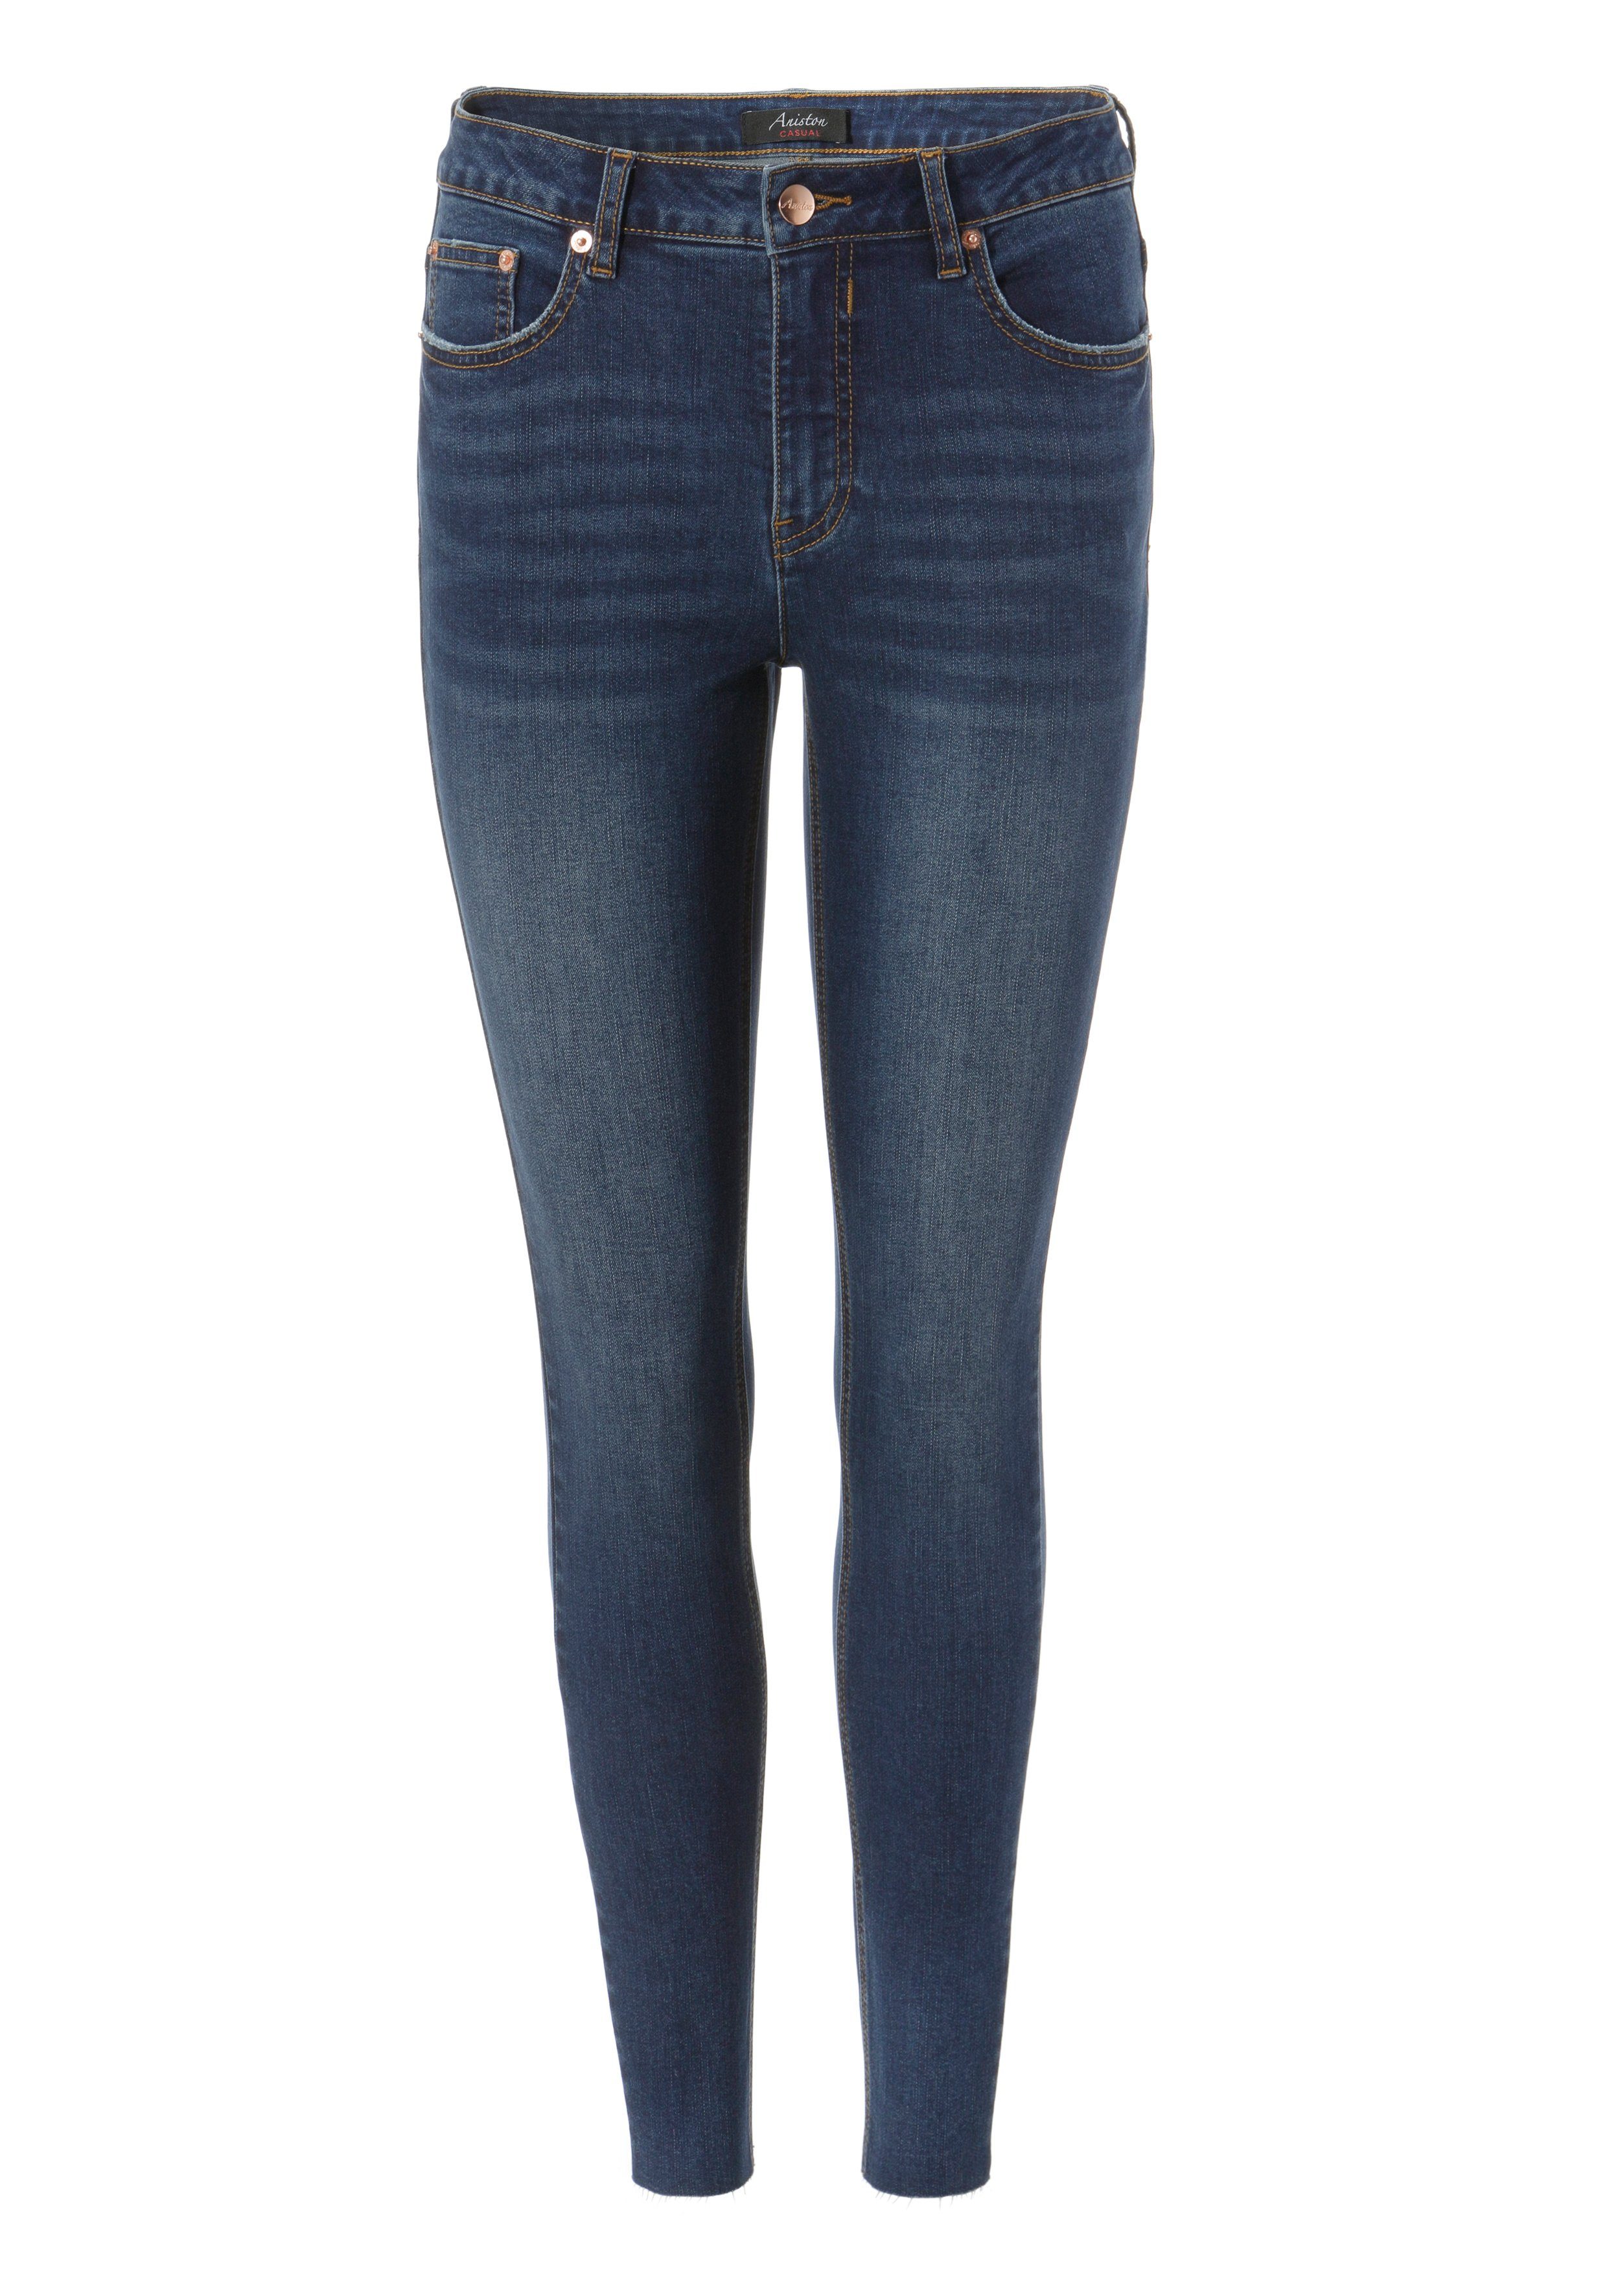 CASUAL Beinabschluss Aniston Skinny-fit-Jeans darkblue waist - regular mit ausgefransten